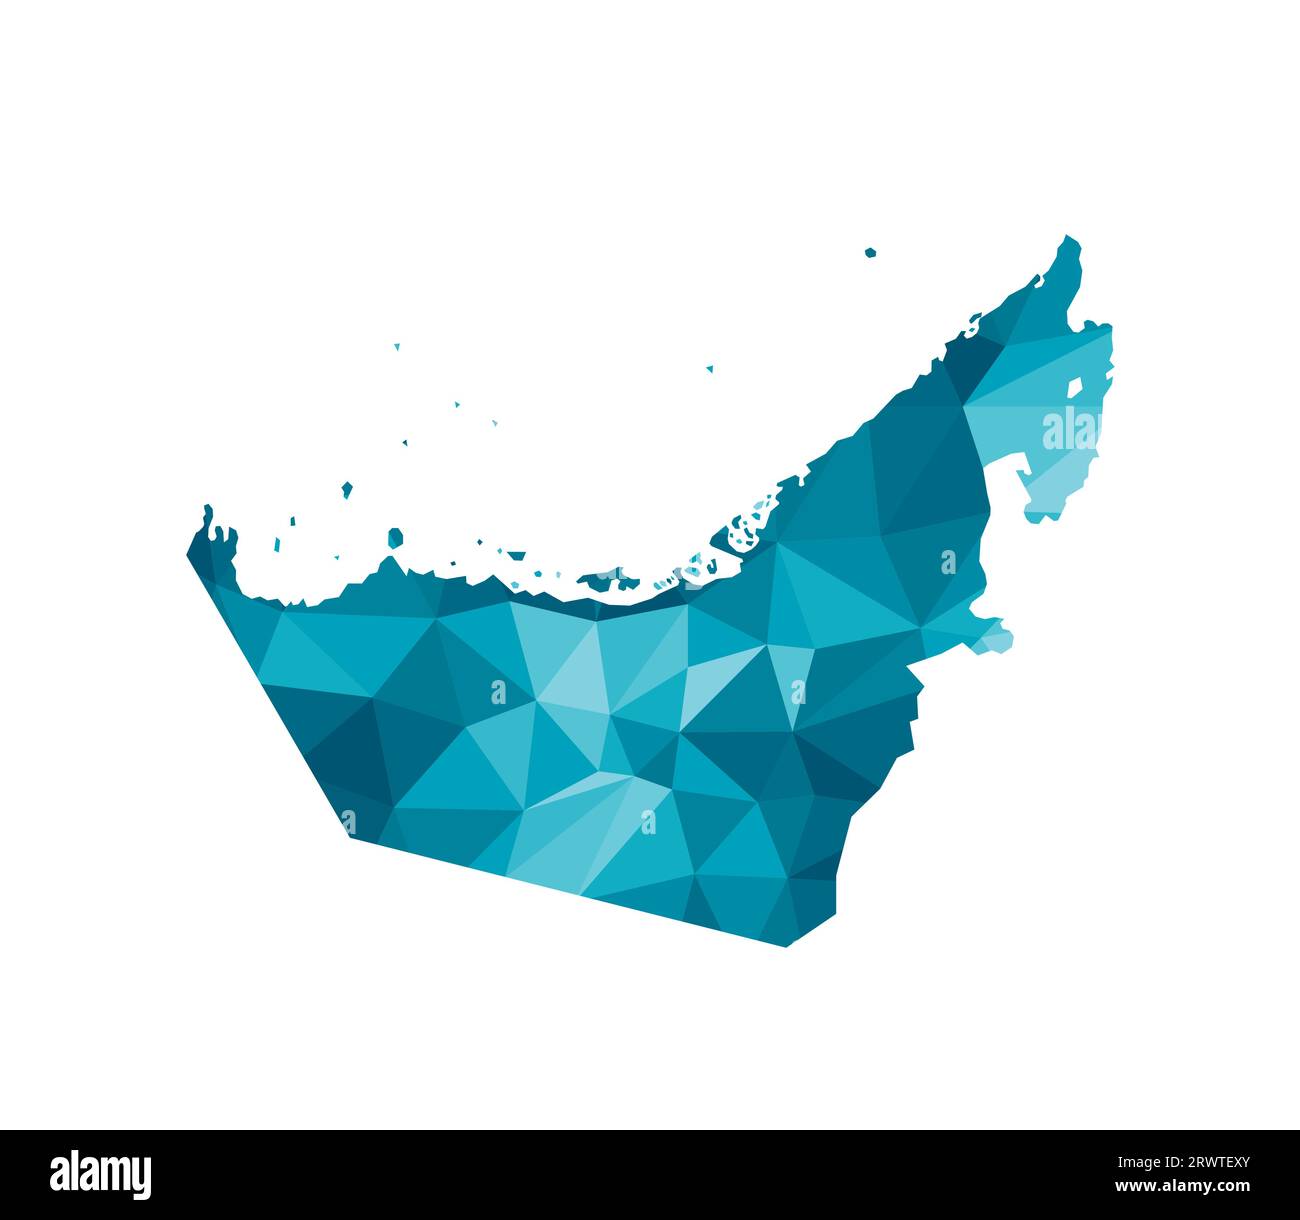 Icône d'illustration isolée vectorielle avec silhouette bleue simplifiée de la carte des Émirats arabes Unis (Émirats arabes Unis). Style géométrique polygonal, formes triangulaires. WHI Illustration de Vecteur